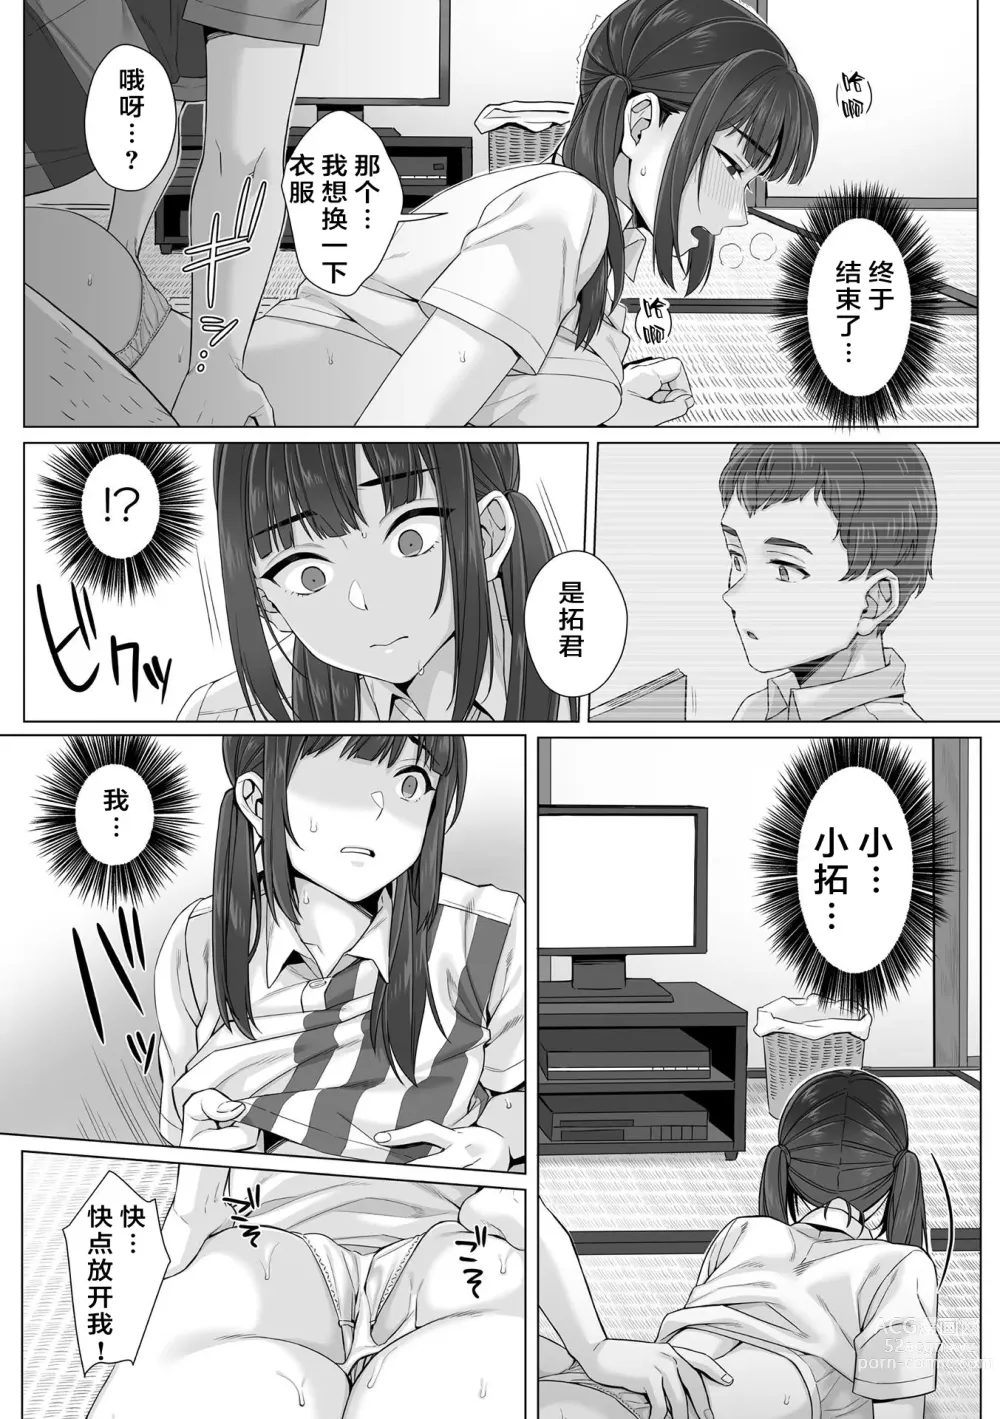 Page 8 of manga Junboku Joshikousei wa Oyaji Iro ni Somerarete Comic Ban Ch. 3